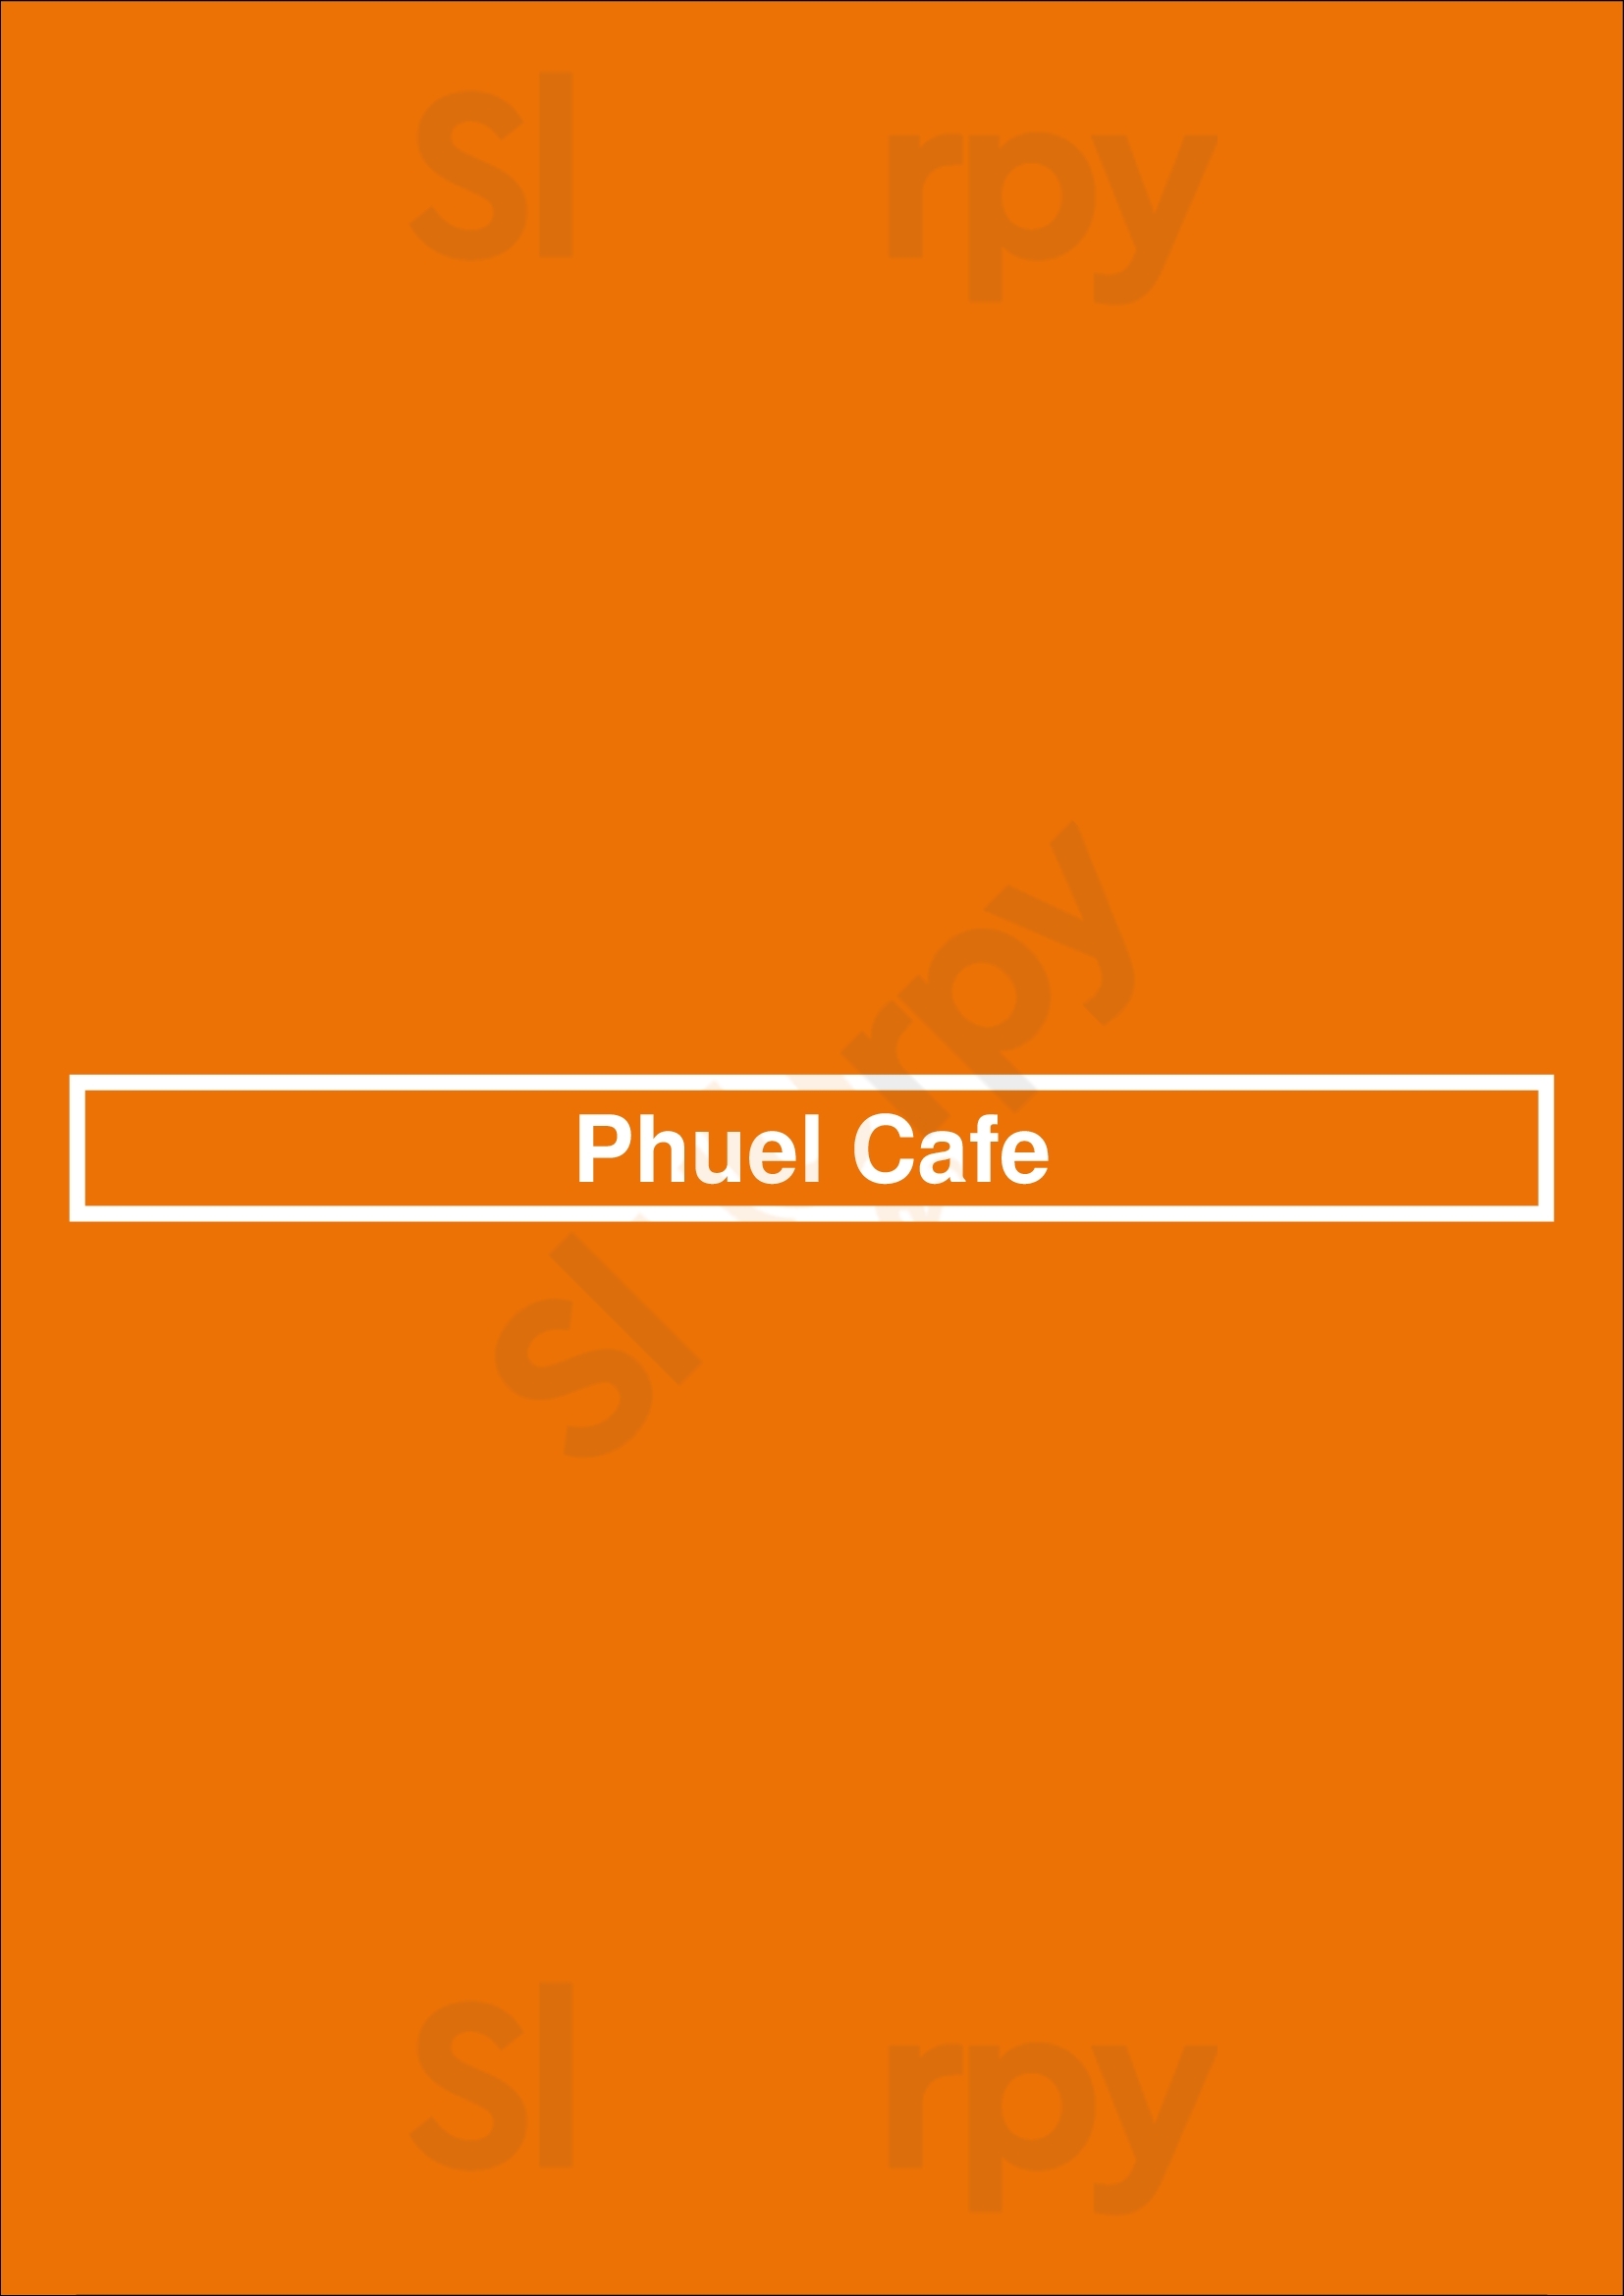 Phuel Cafe Cleveland Menu - 1